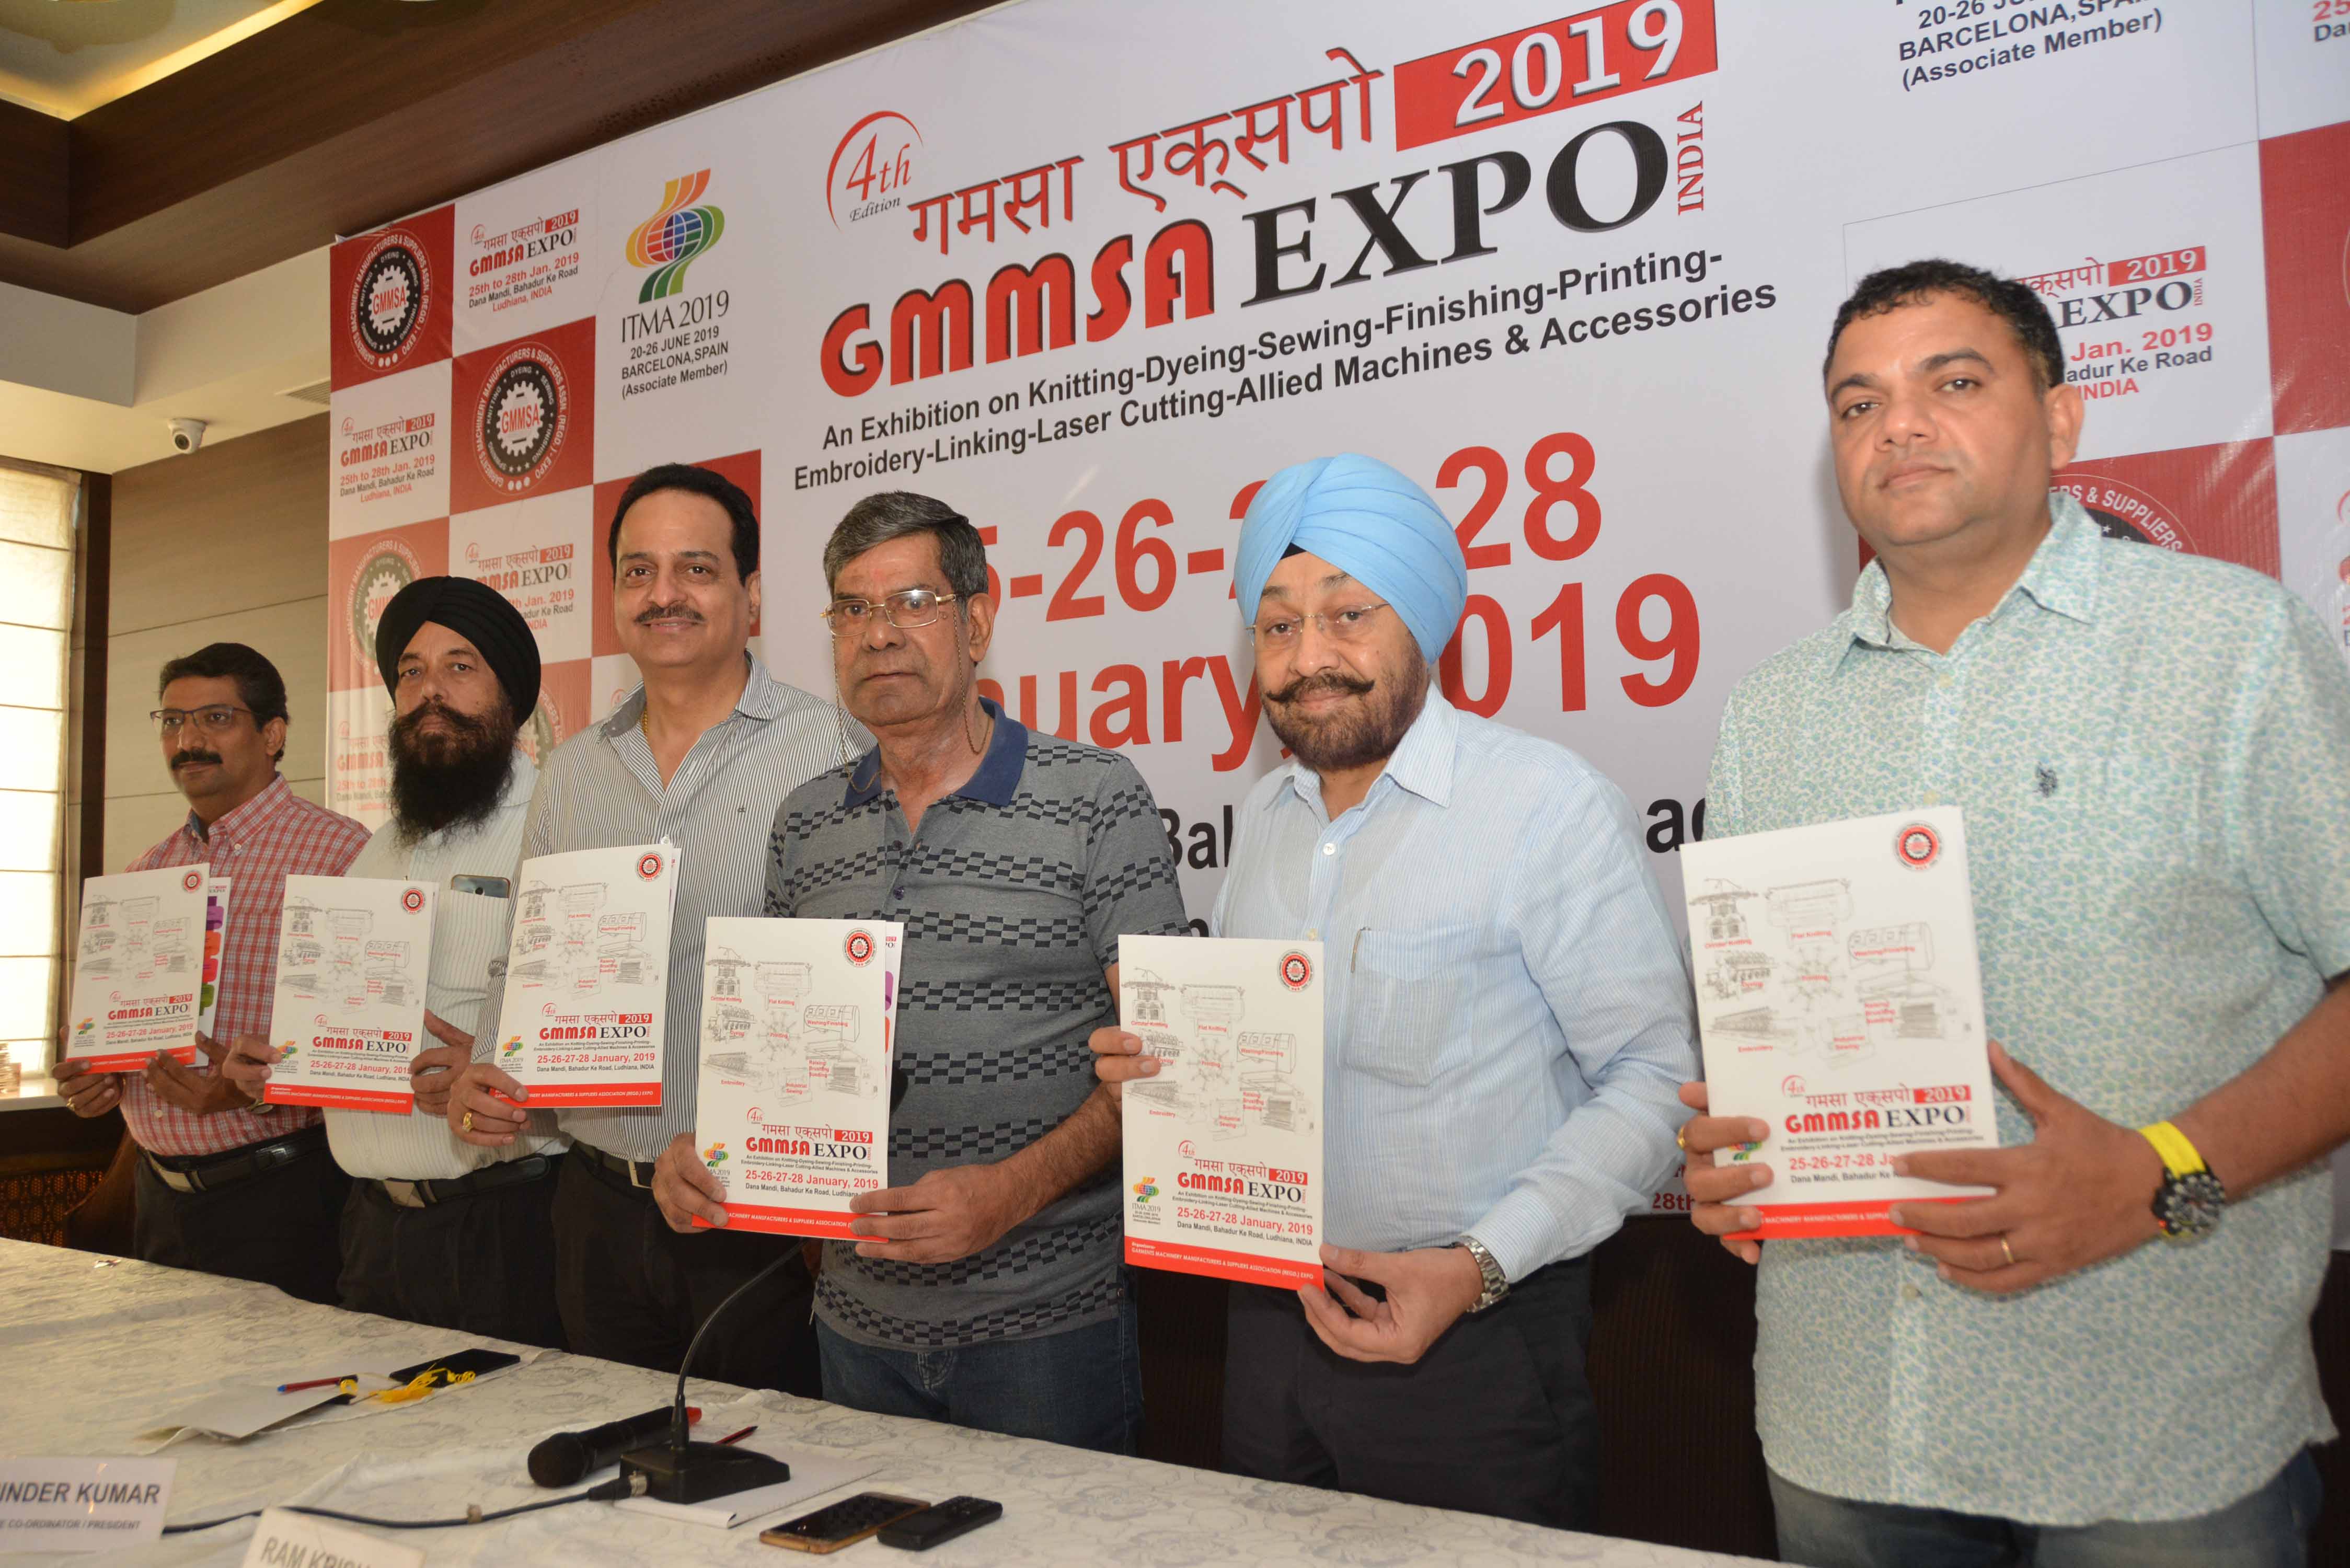 GMMSA EXPO INDIA 2019